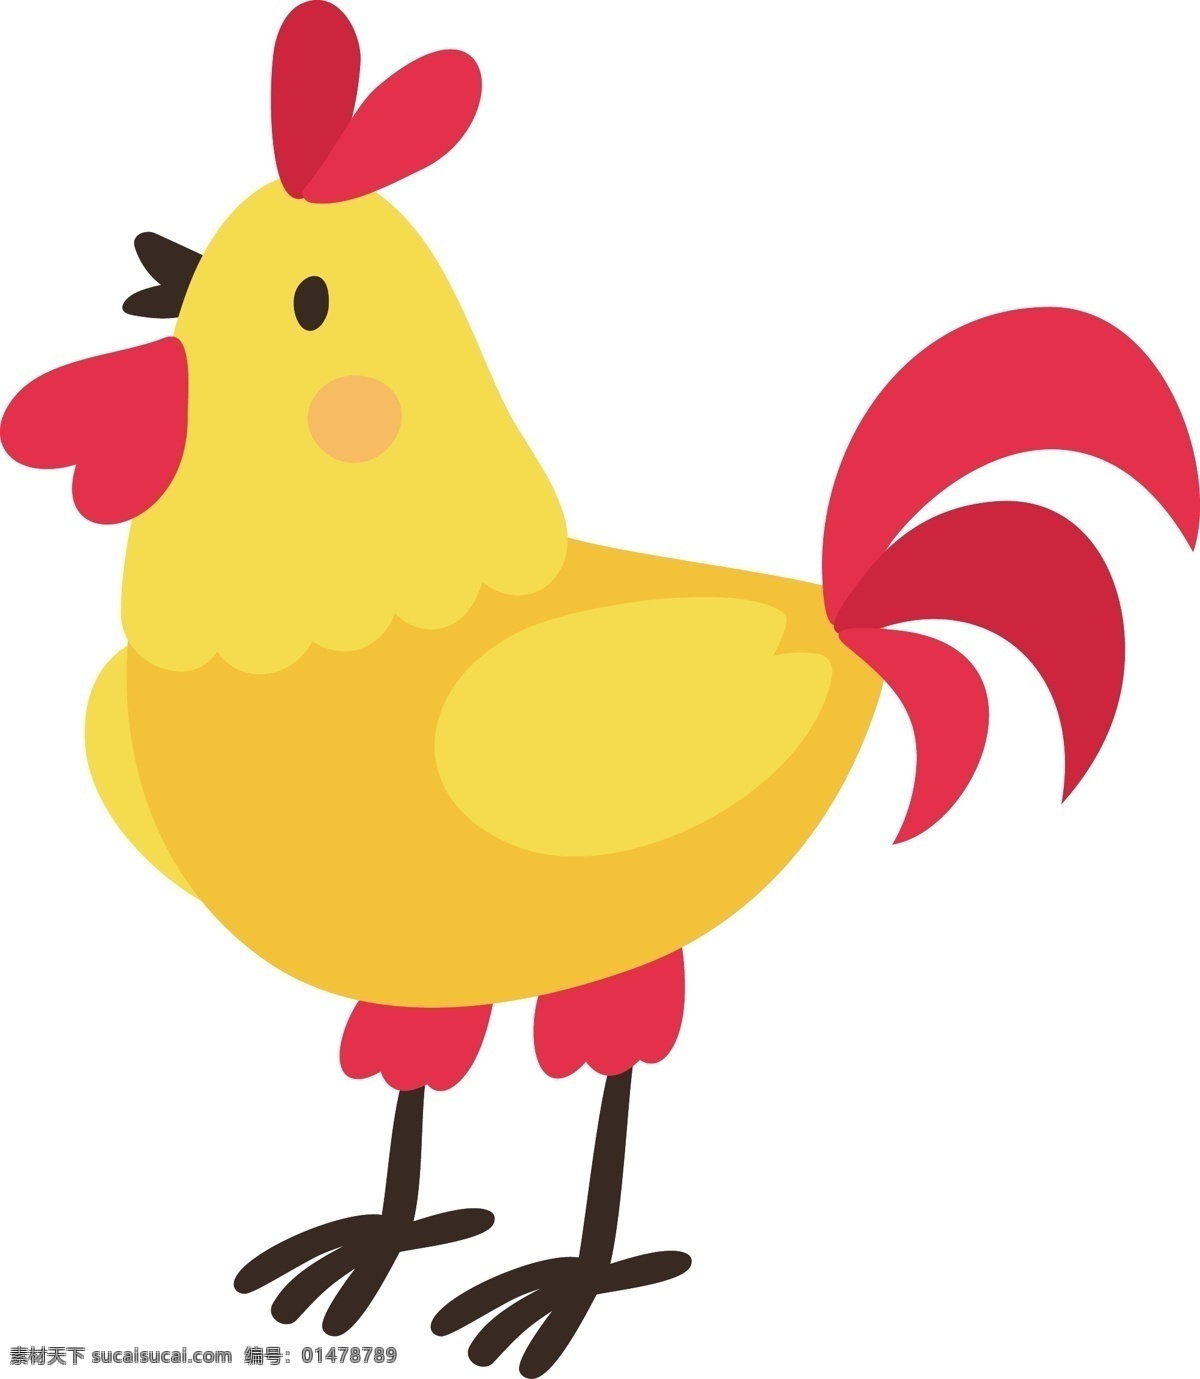 大 公鸡 卡通 动物 水果 童话 小孩子 矢量 logo